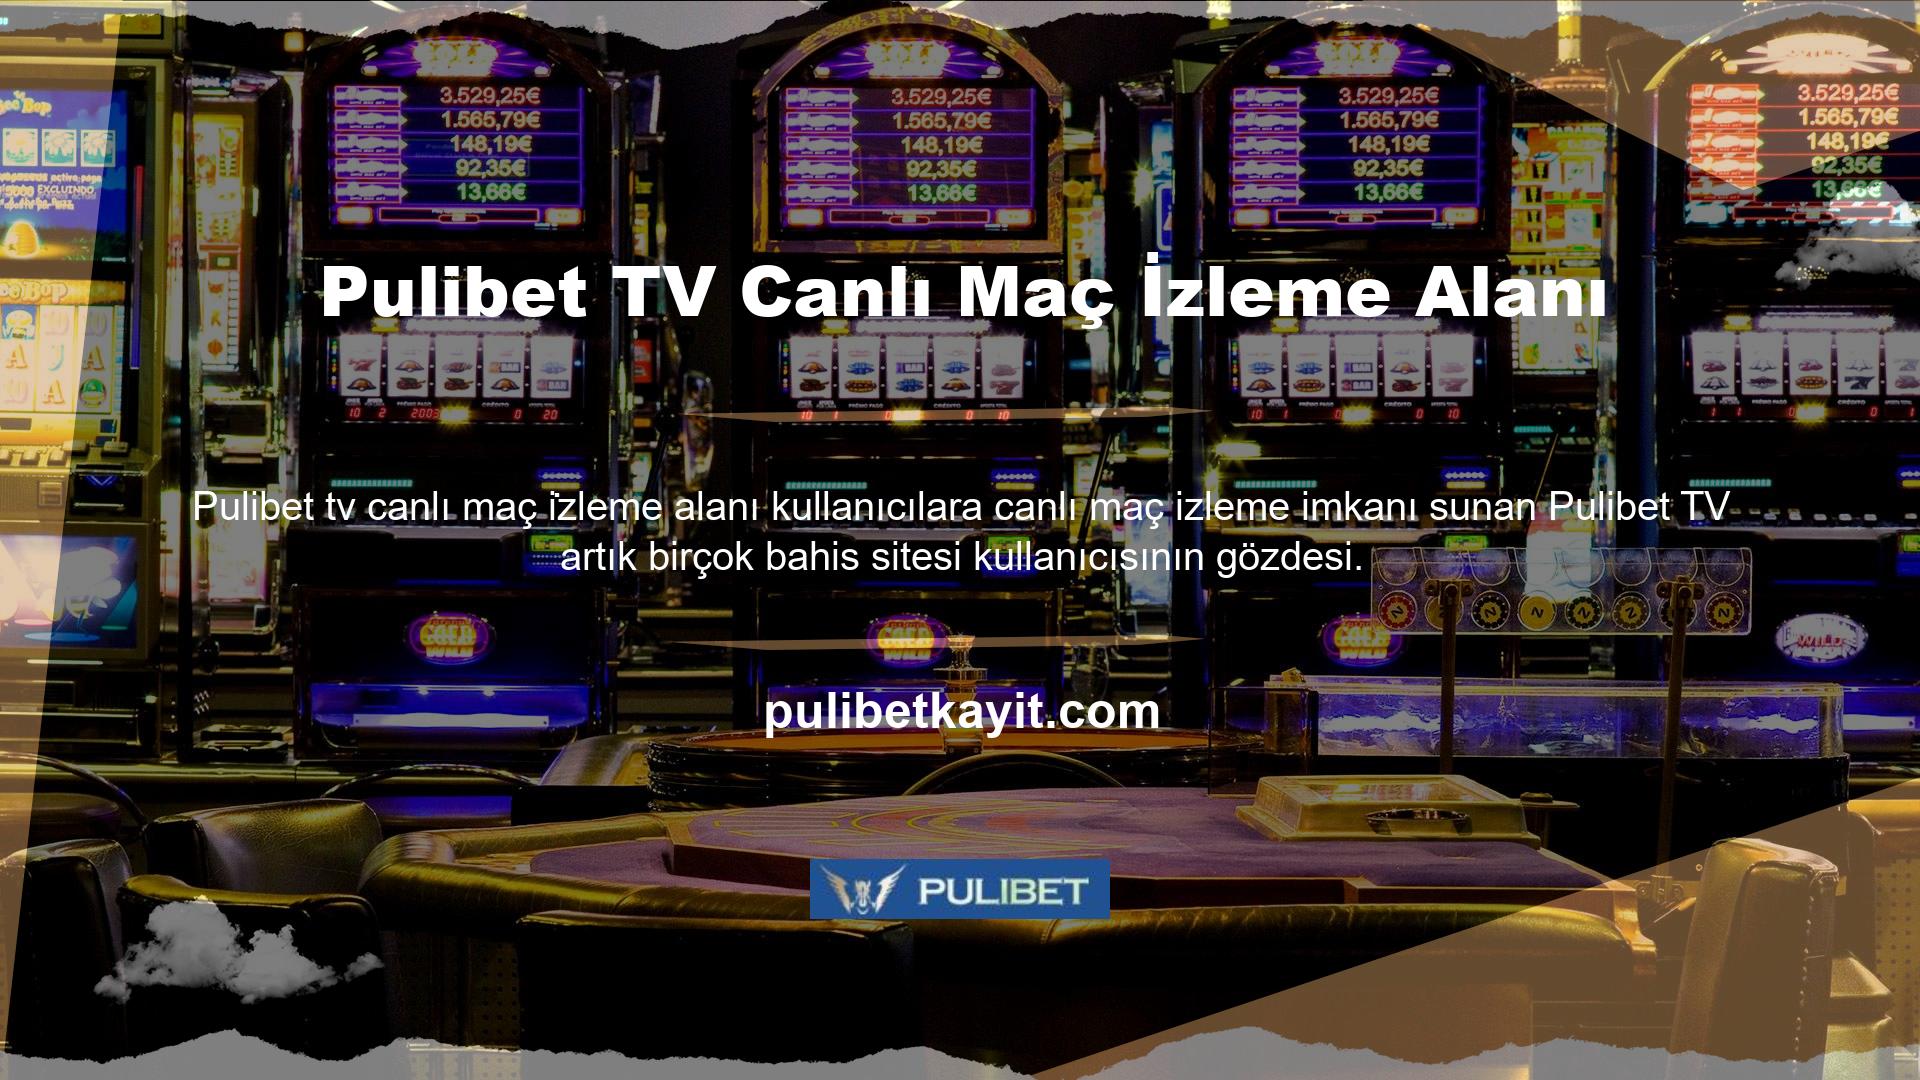 Pulibet Tv genellikle alt liglere bahis yapmak için kullanılır ve sitenin alanlarında birçok canlı maç yayınlanır